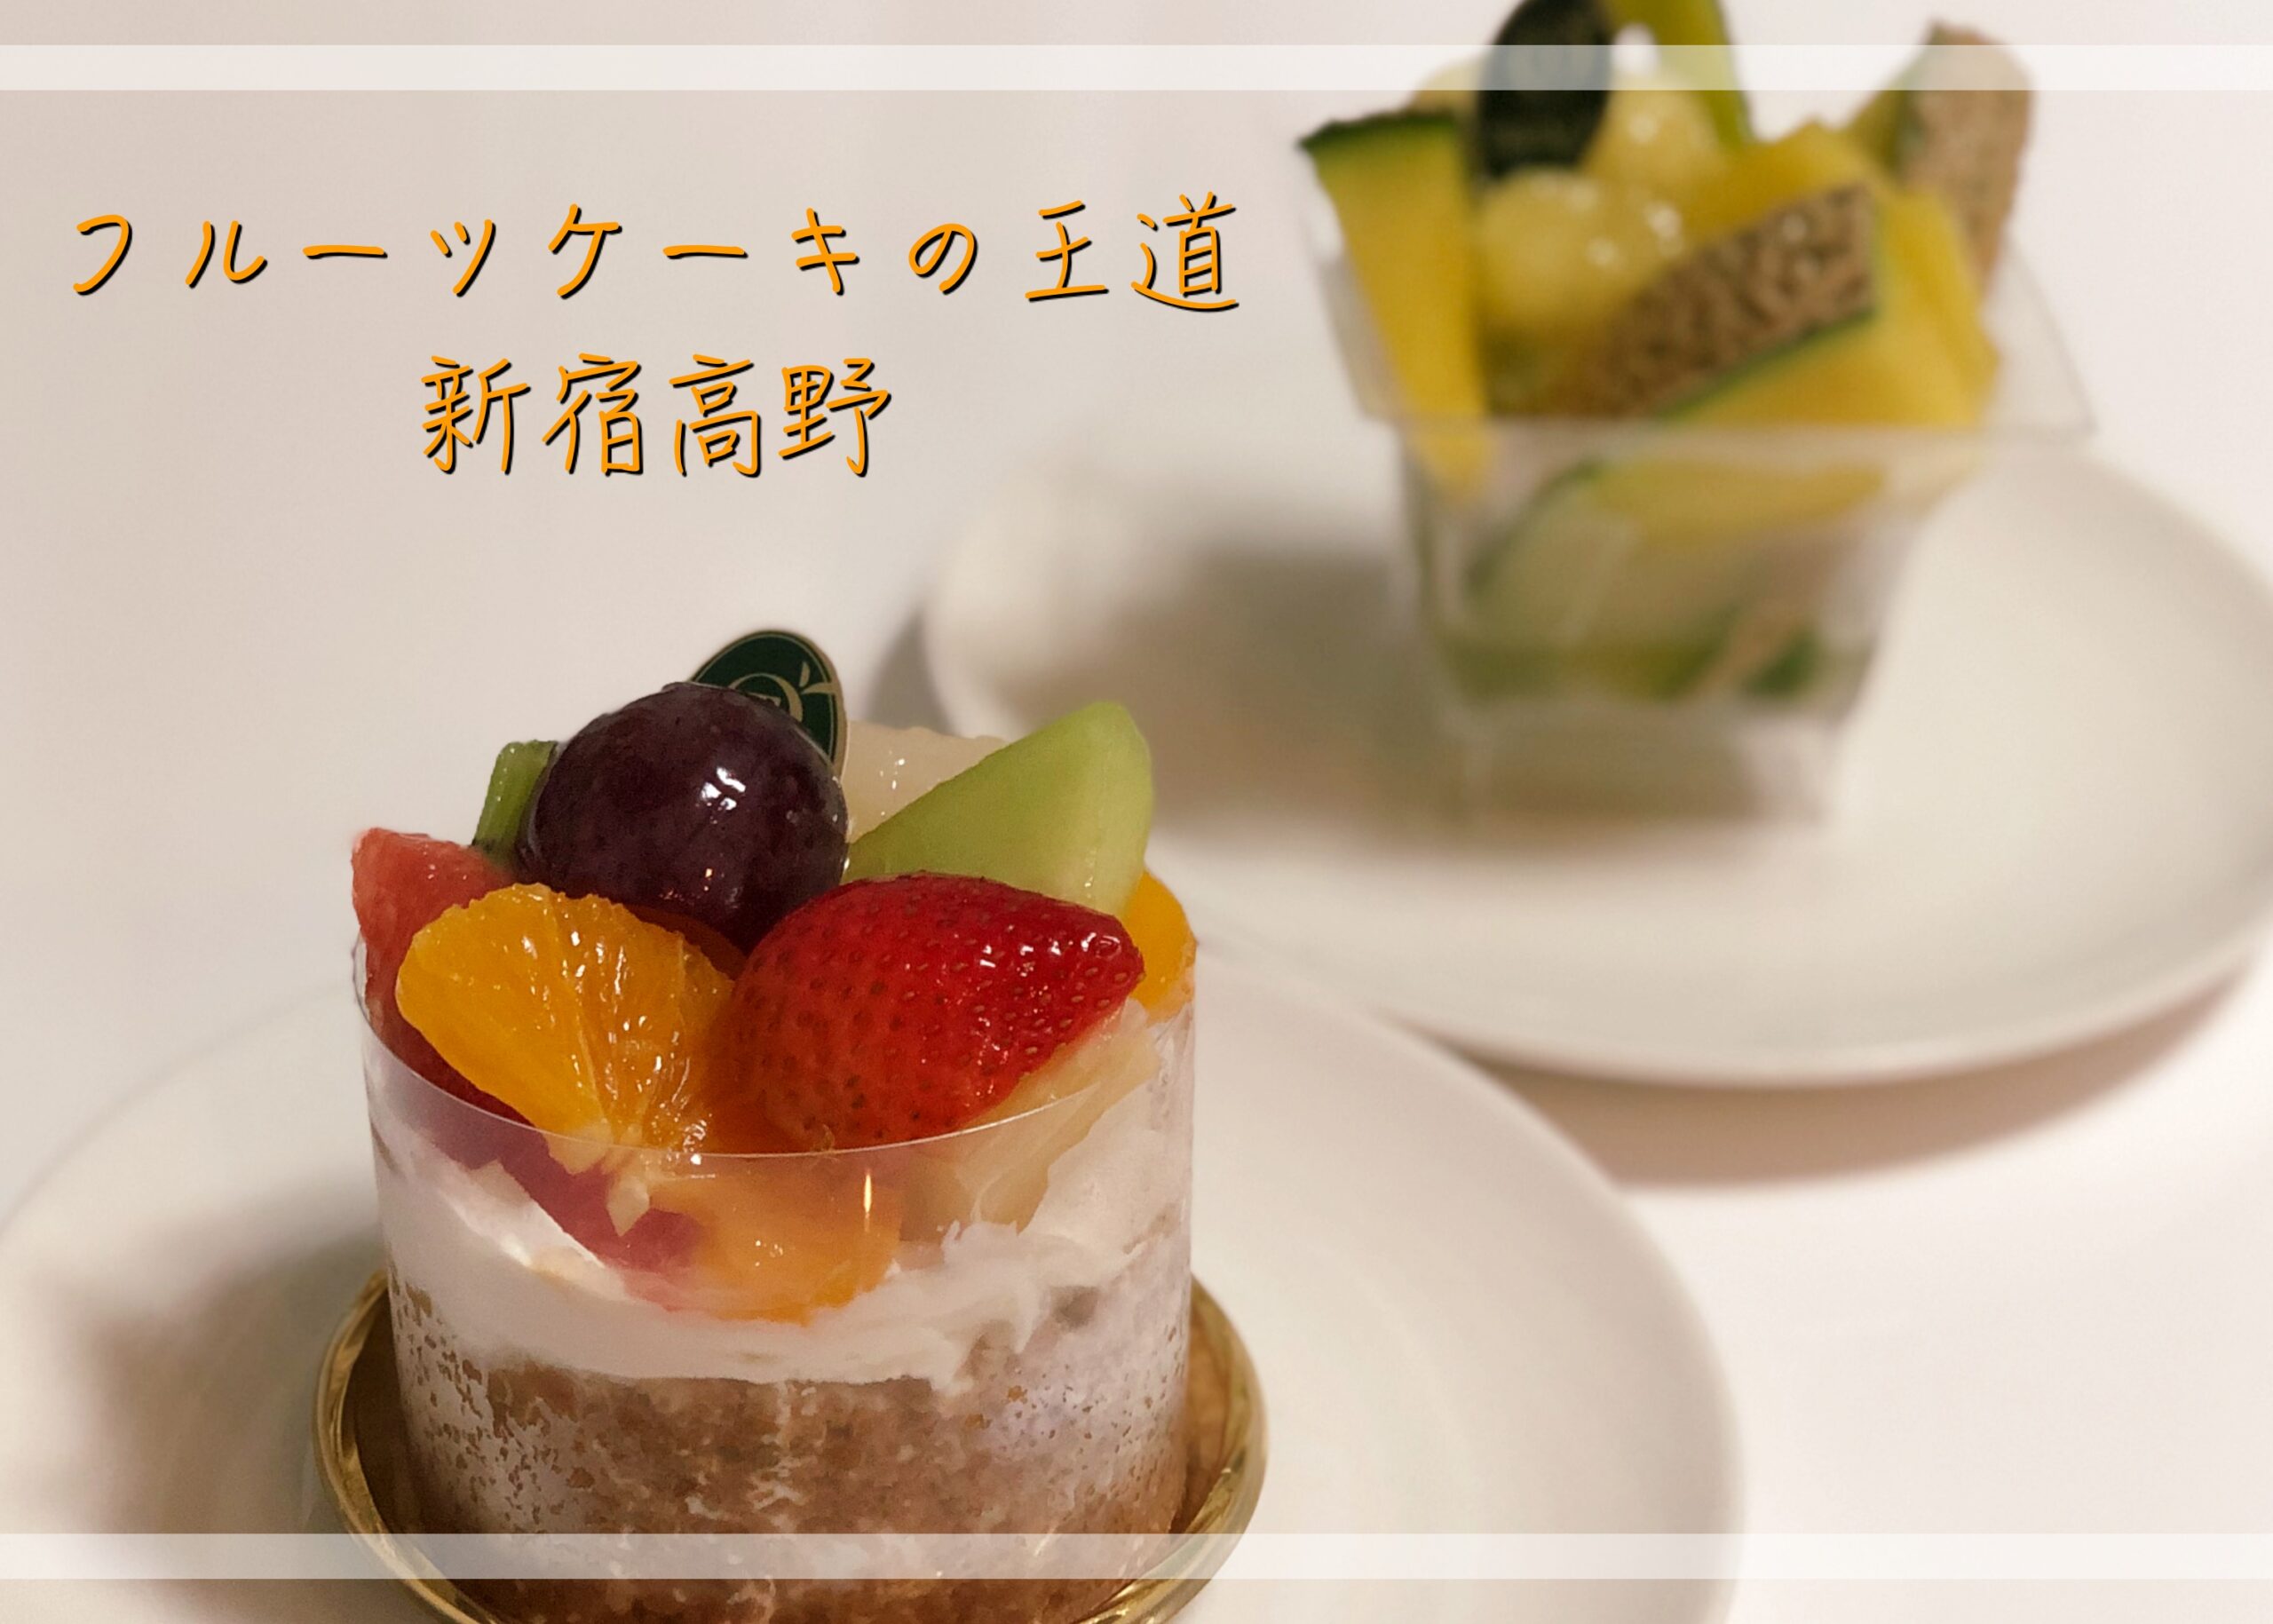 フルーツケーキと言えば新宿高野 グルメディア東京